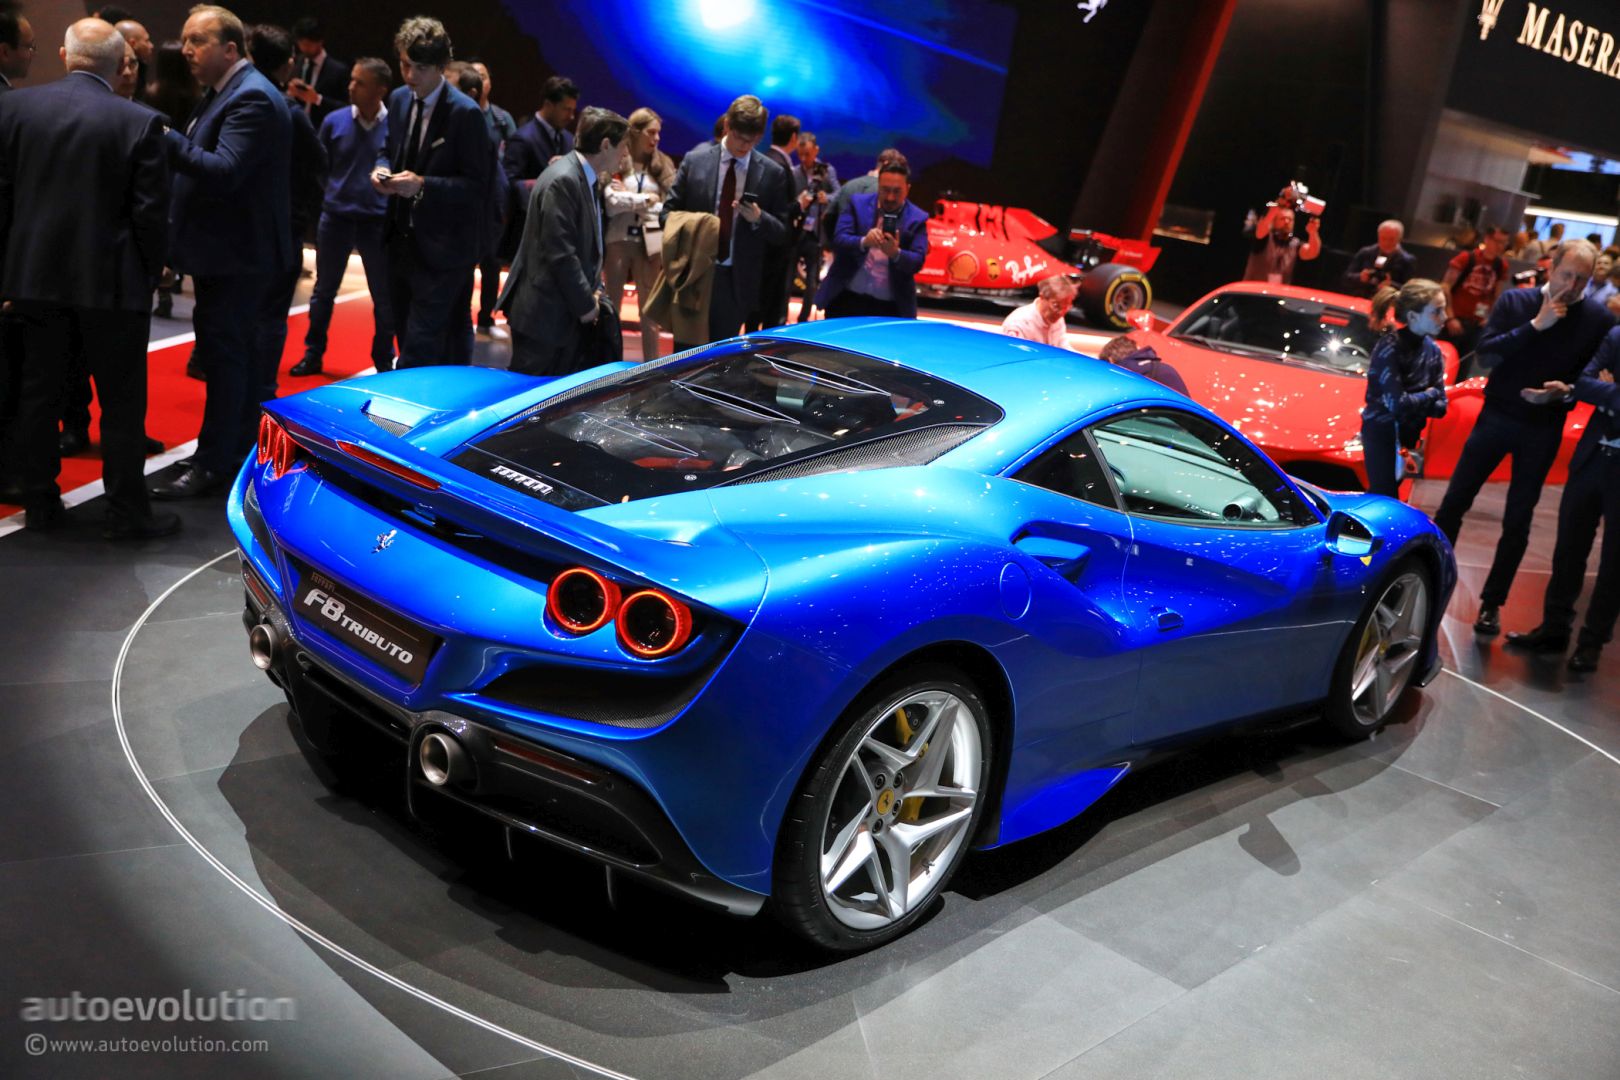 V8 Powered Ferrari Hybrid Supercar Caught On Video Has